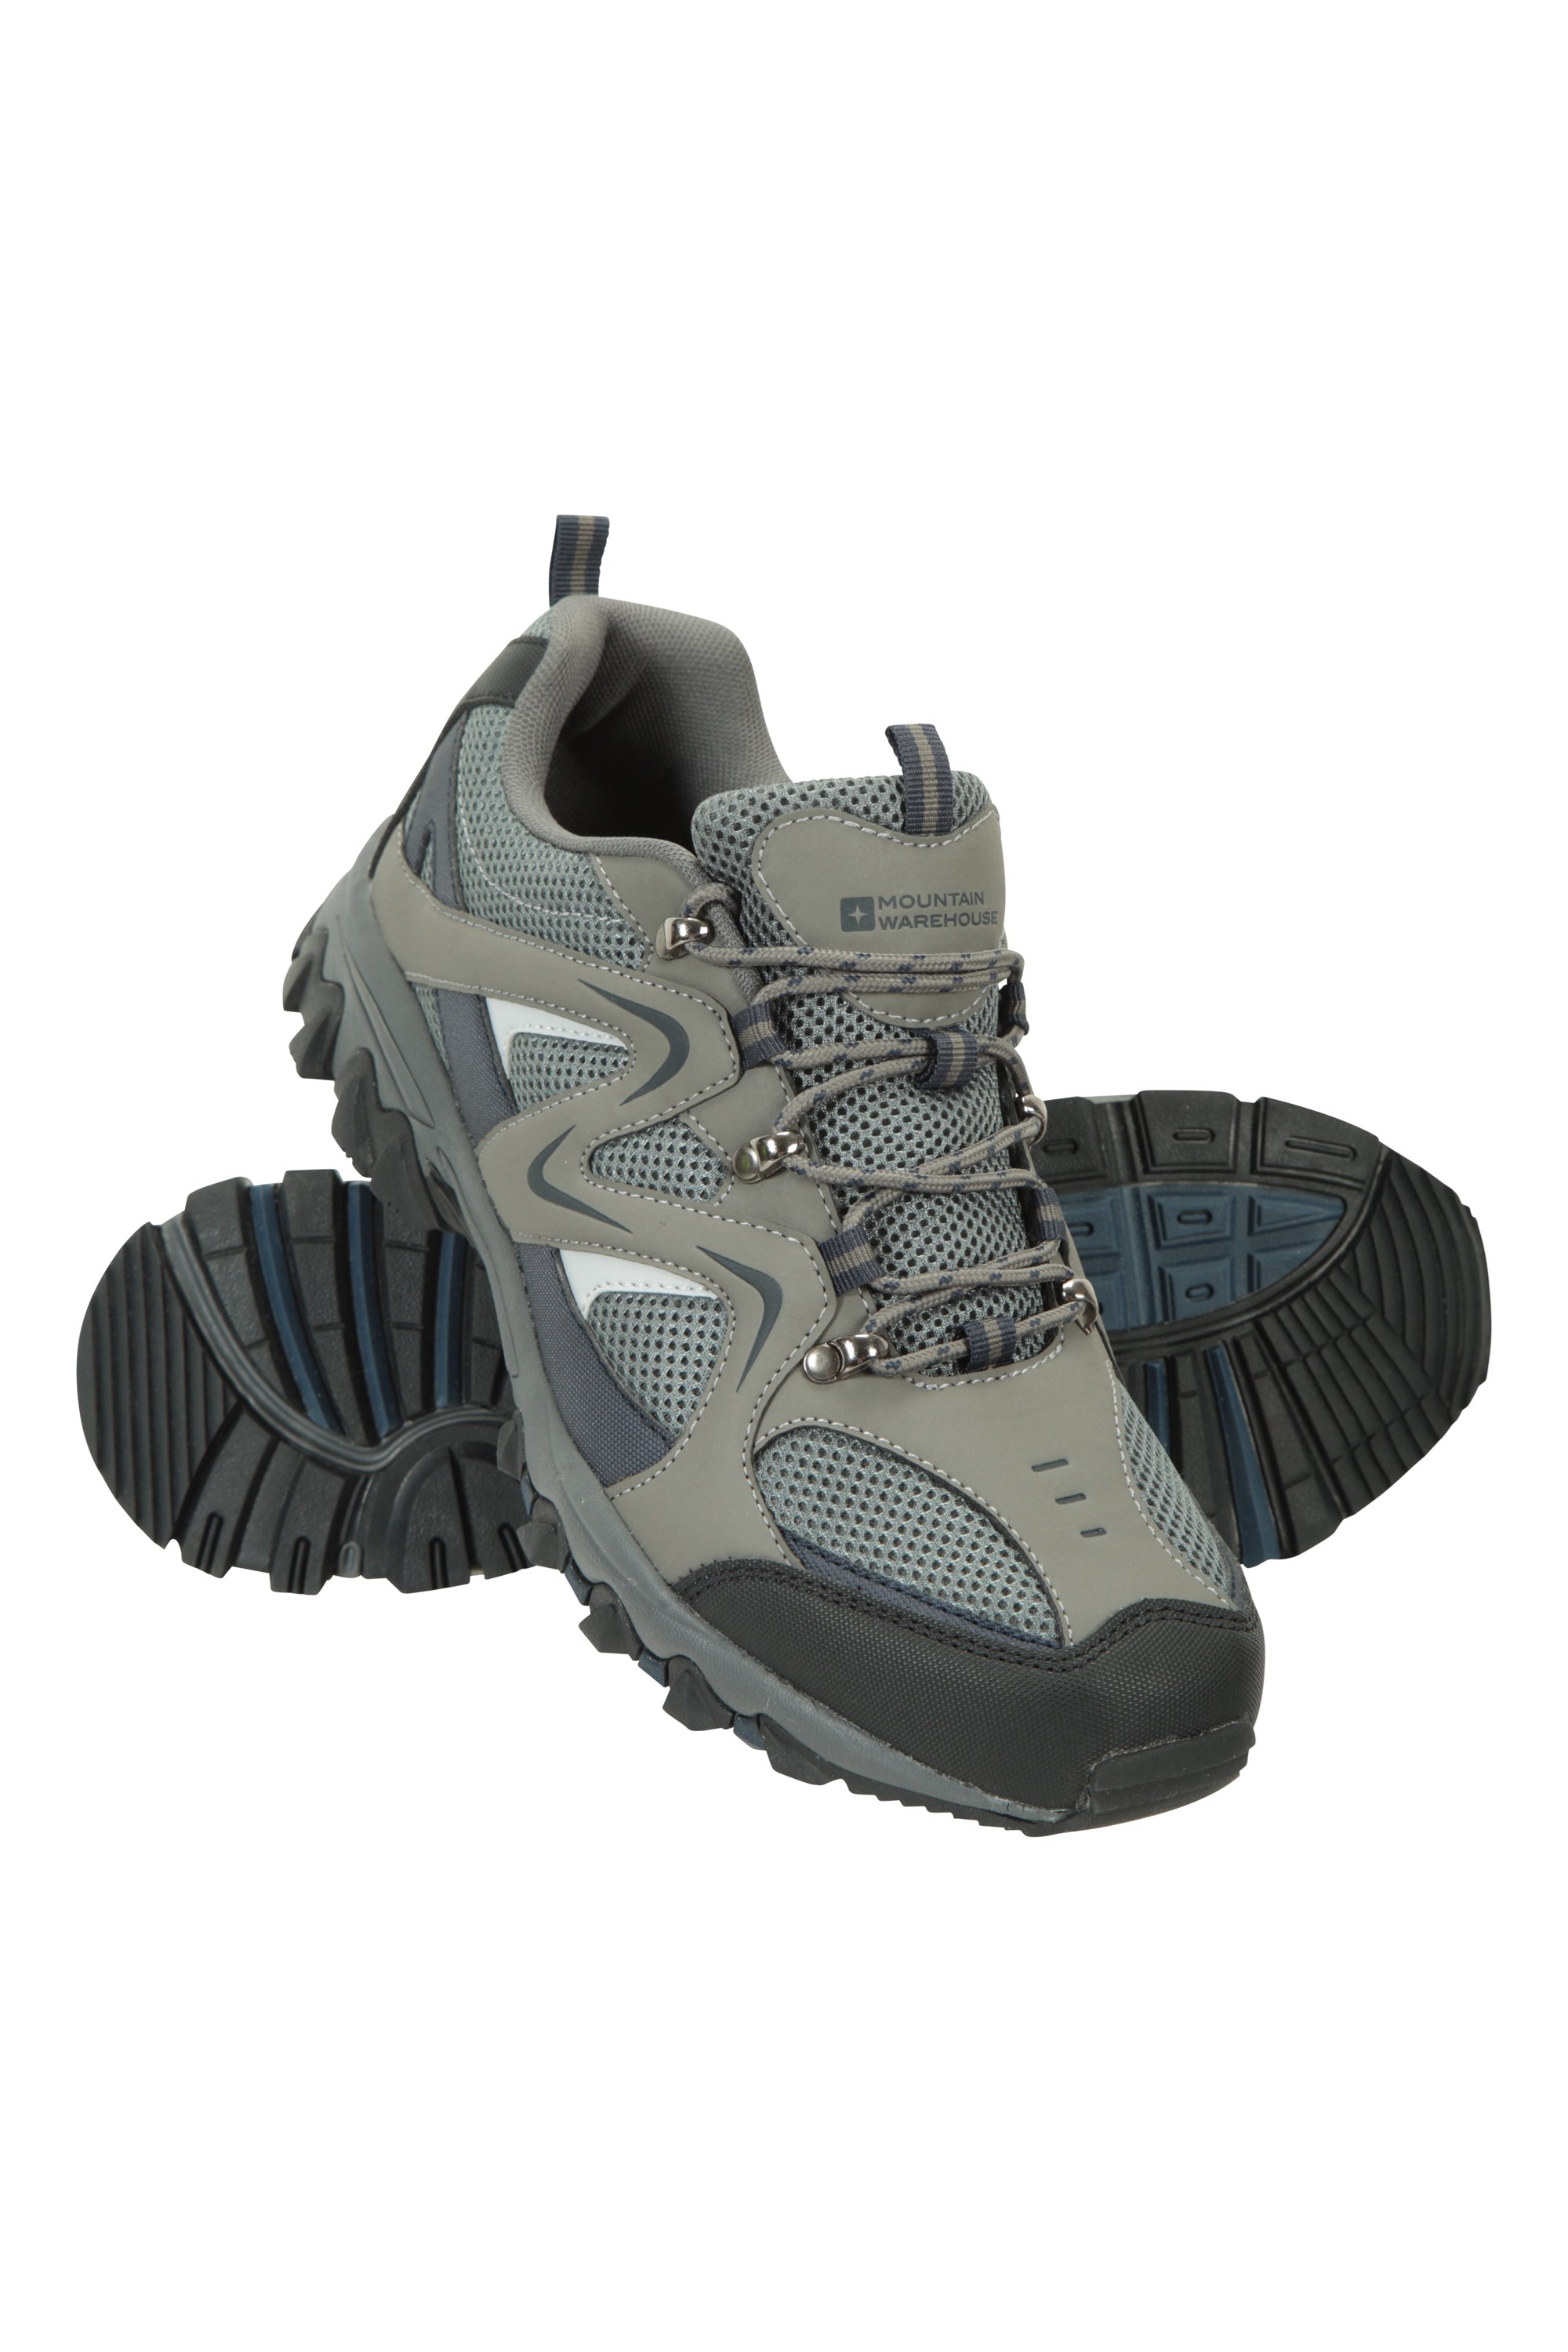 mountain warehouse mens walking shoes